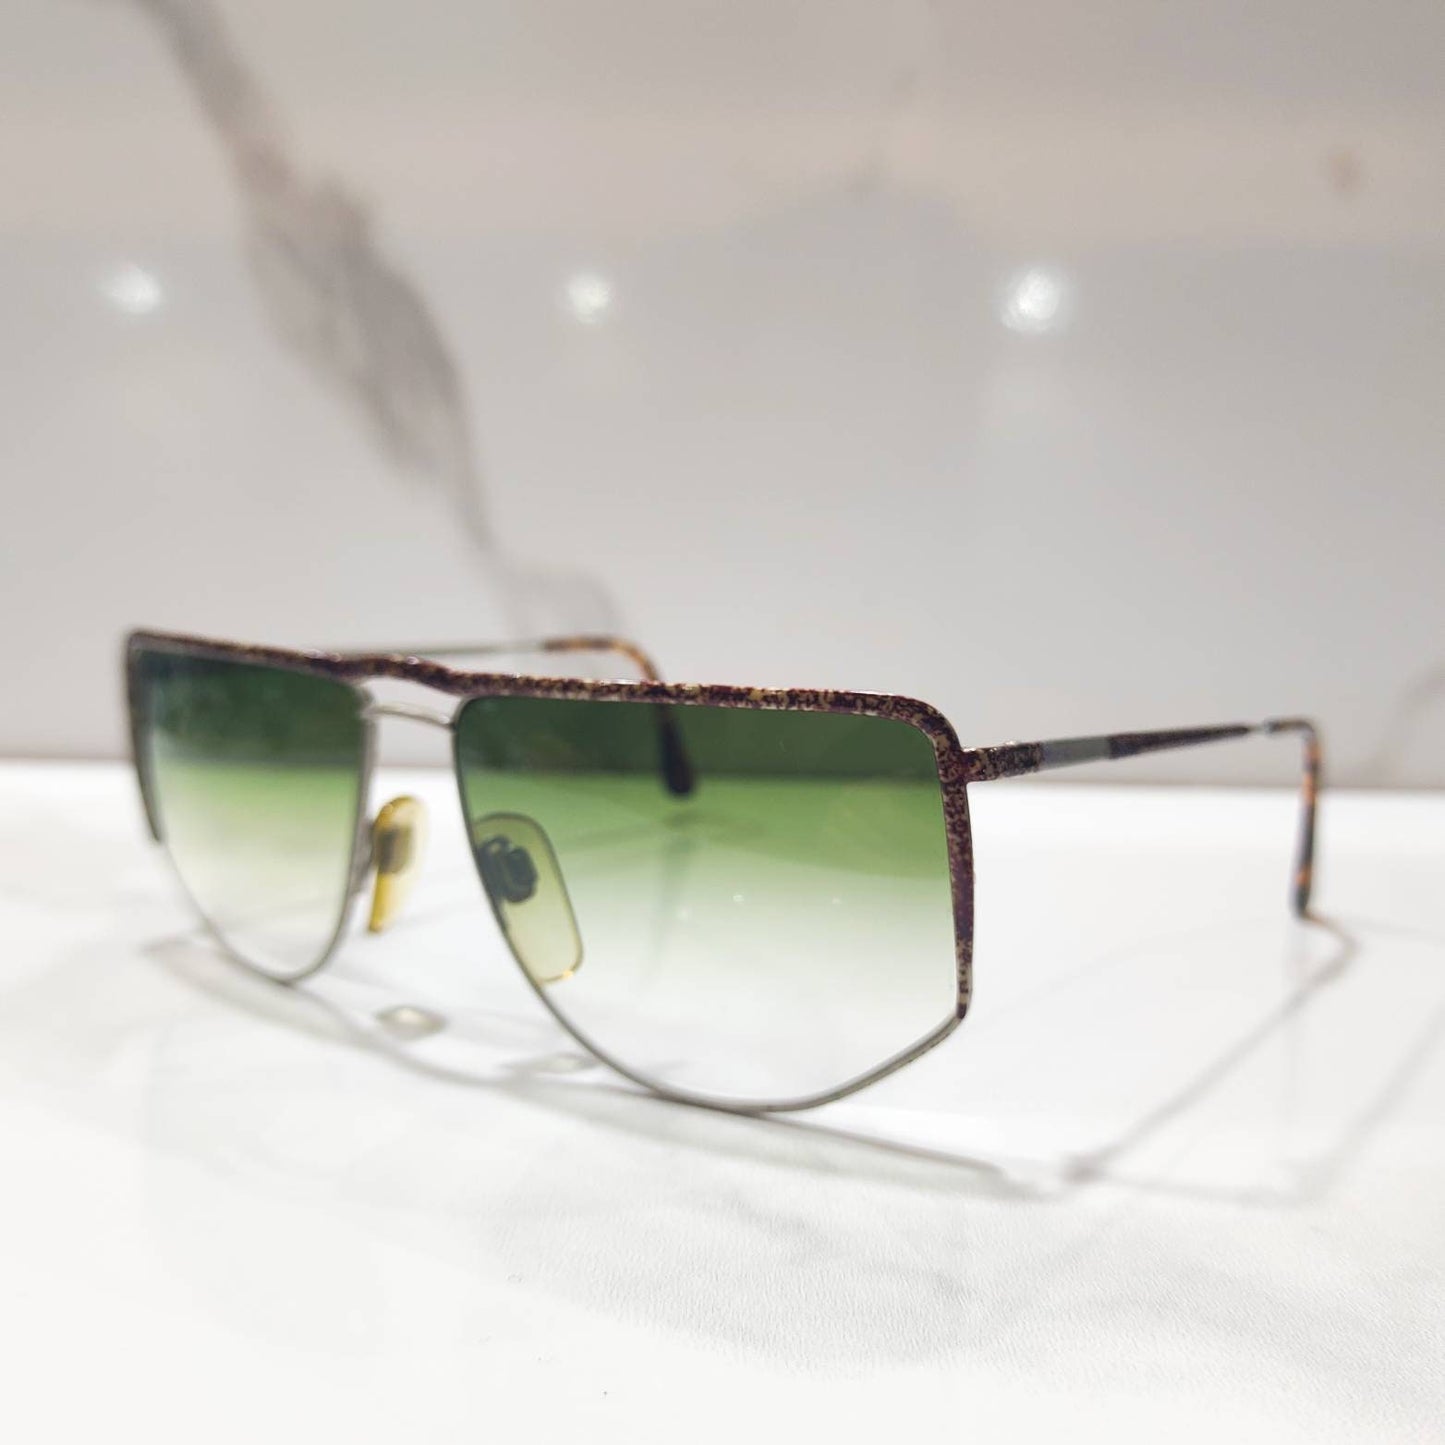 Giorgio Armani NOS lunette brille 太阳镜意大利复古 80 年代